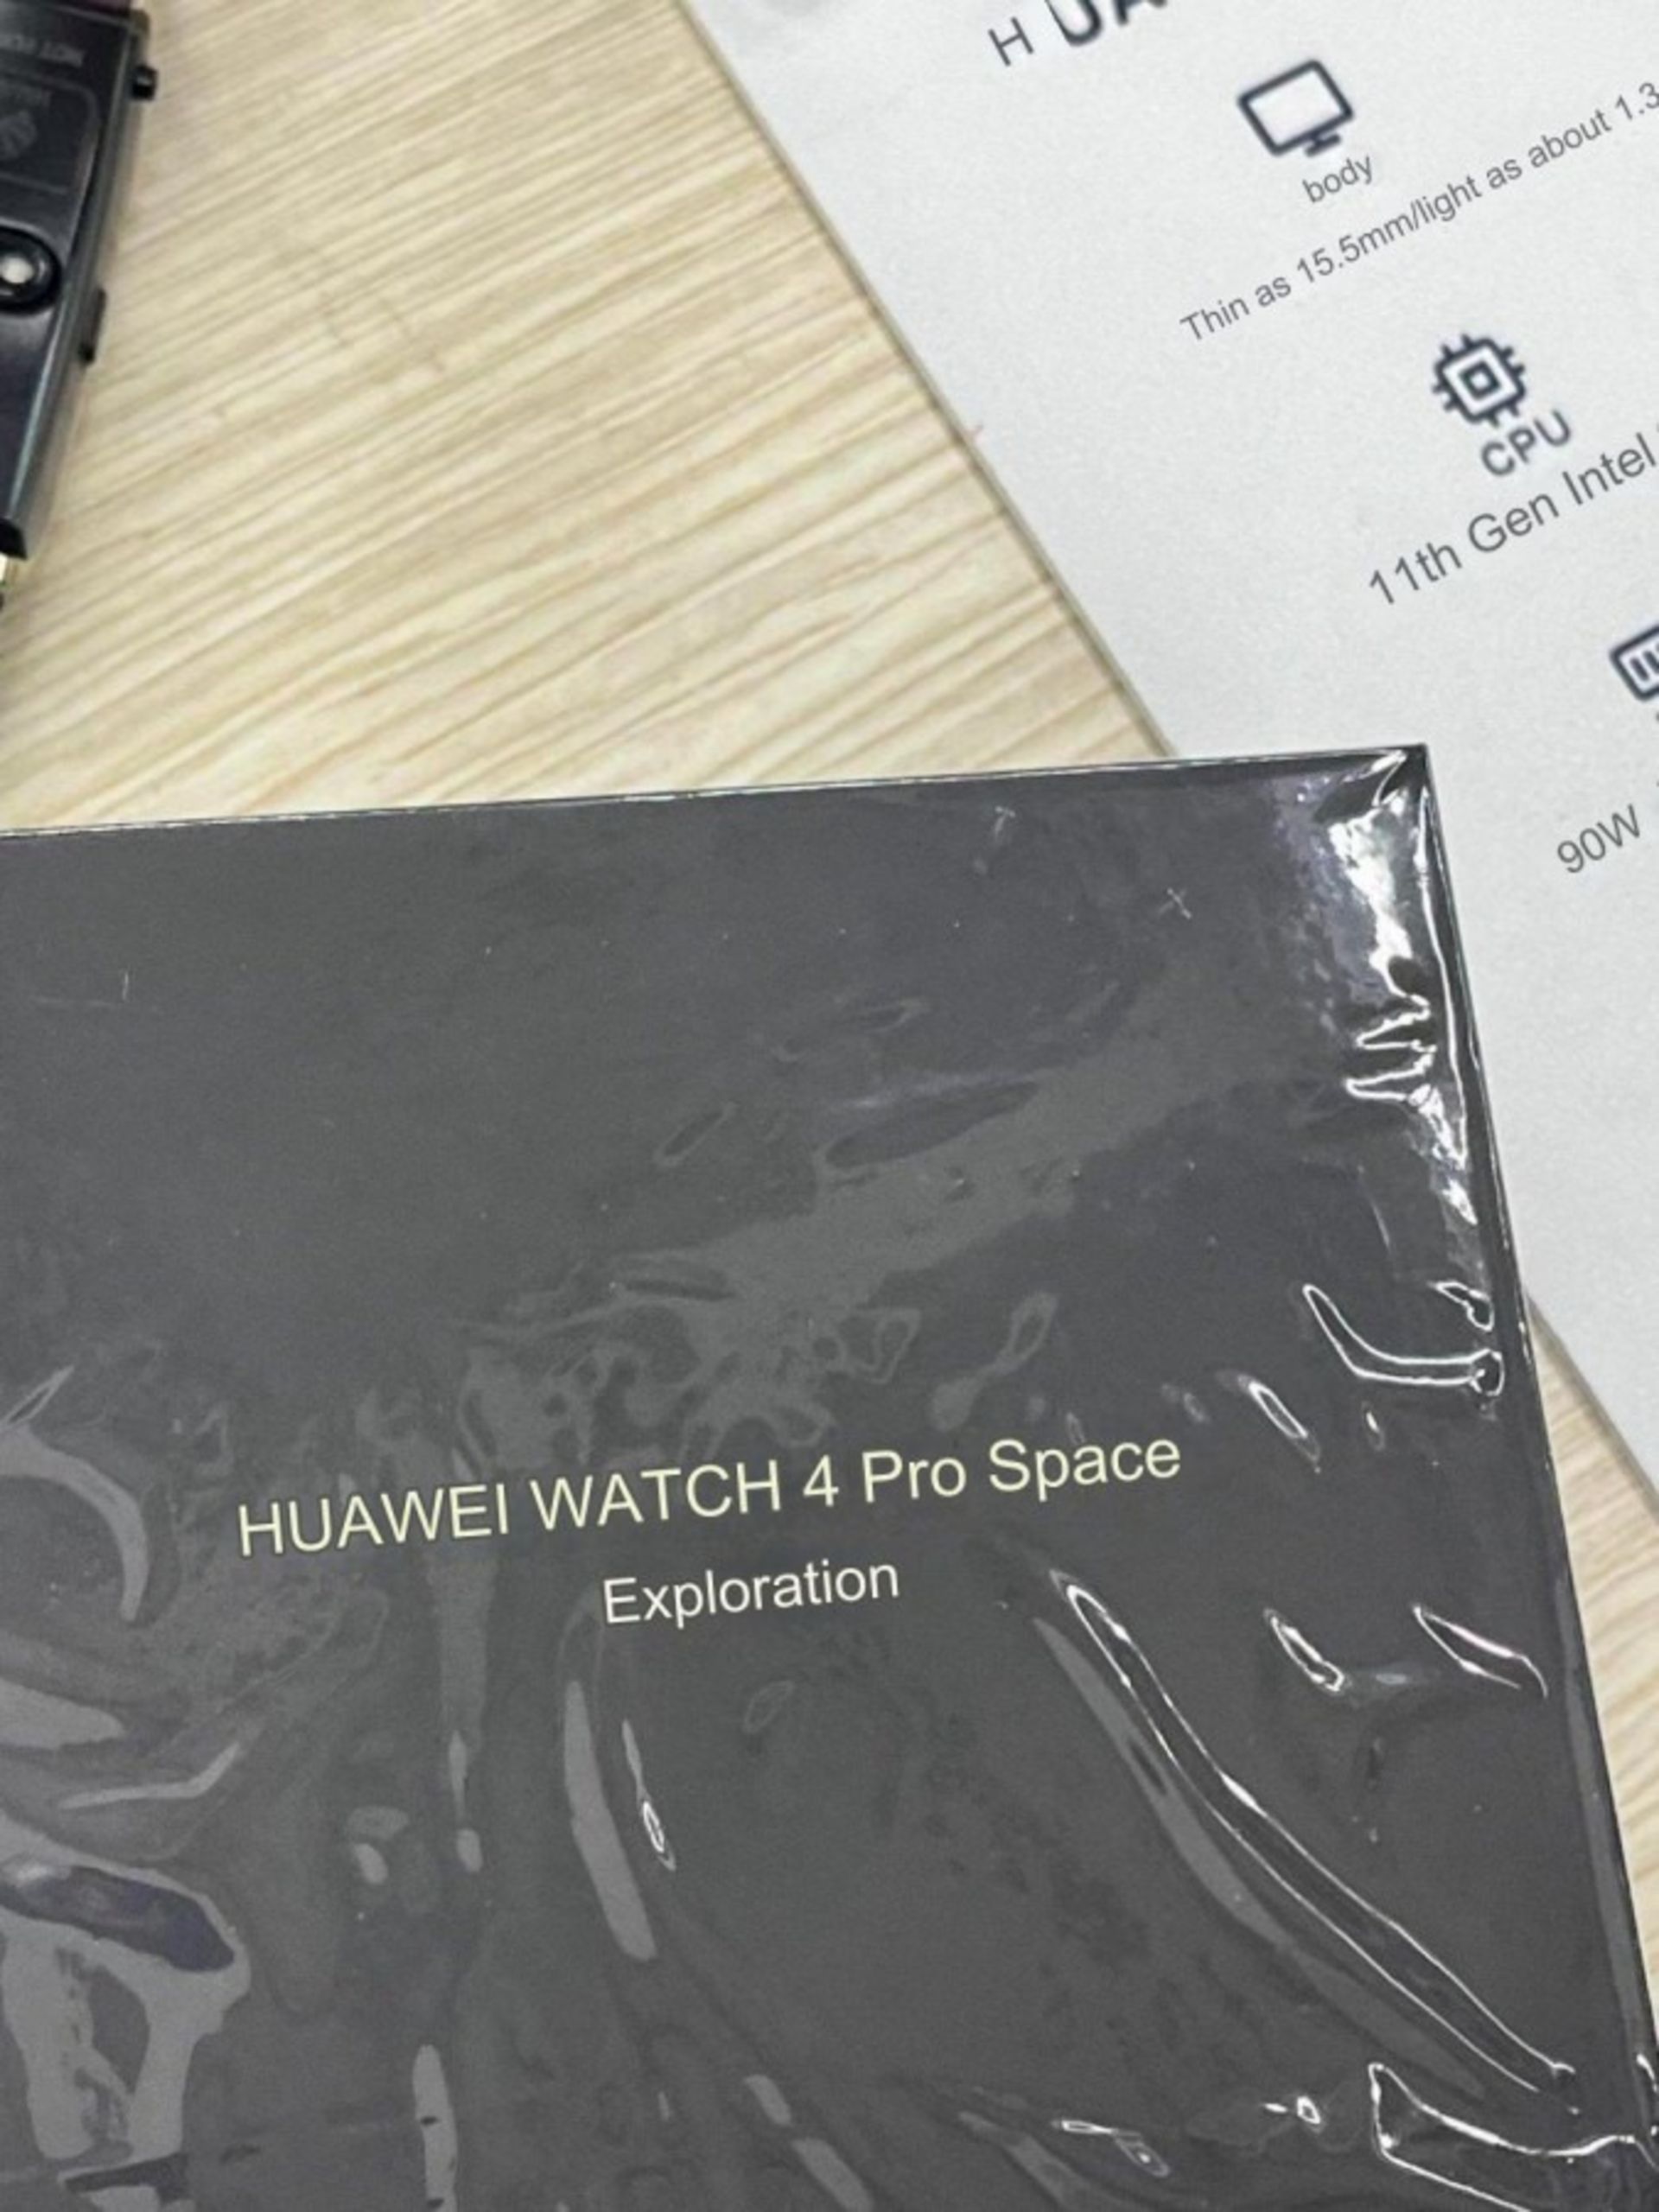 جعبه و کاور ساعت هوشمند هواوی واچ ۴ پرو Exploration Edition در دستان یک کاربر